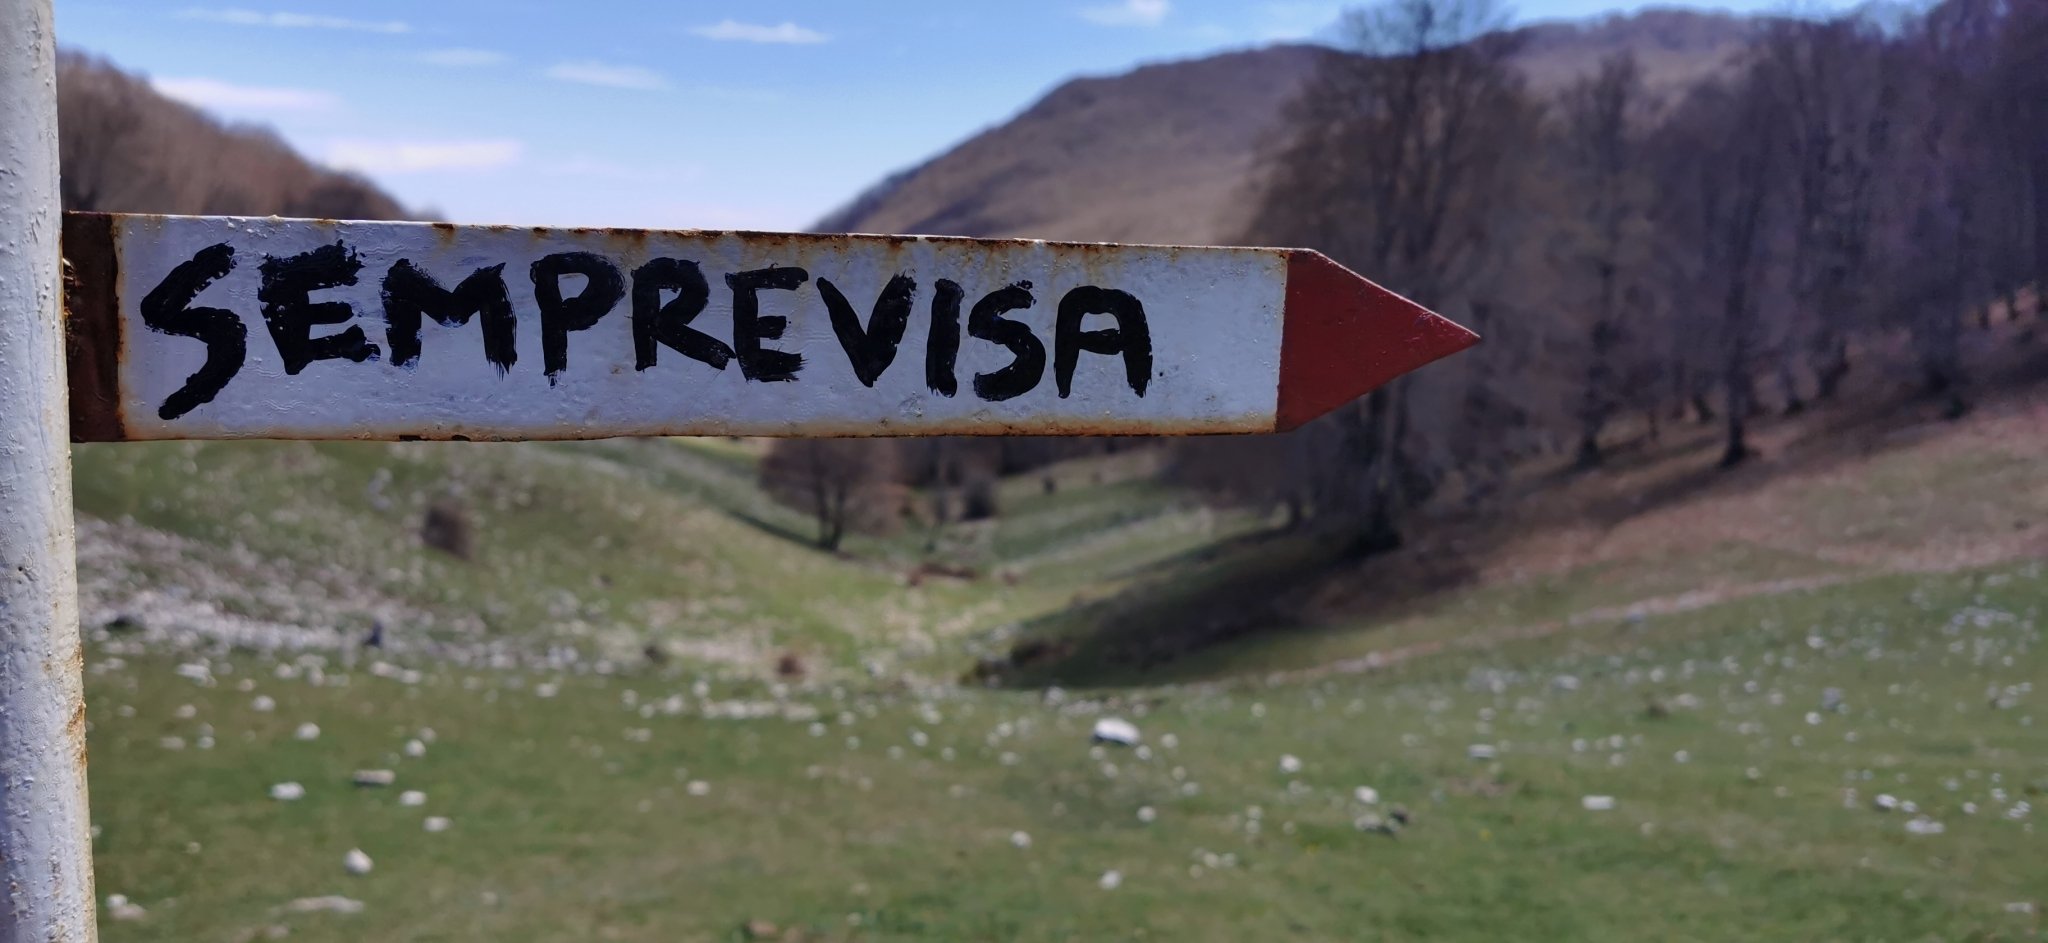 Trekking sul Semprevisa: monte di pastori e faggeti secolari - Discover Experience